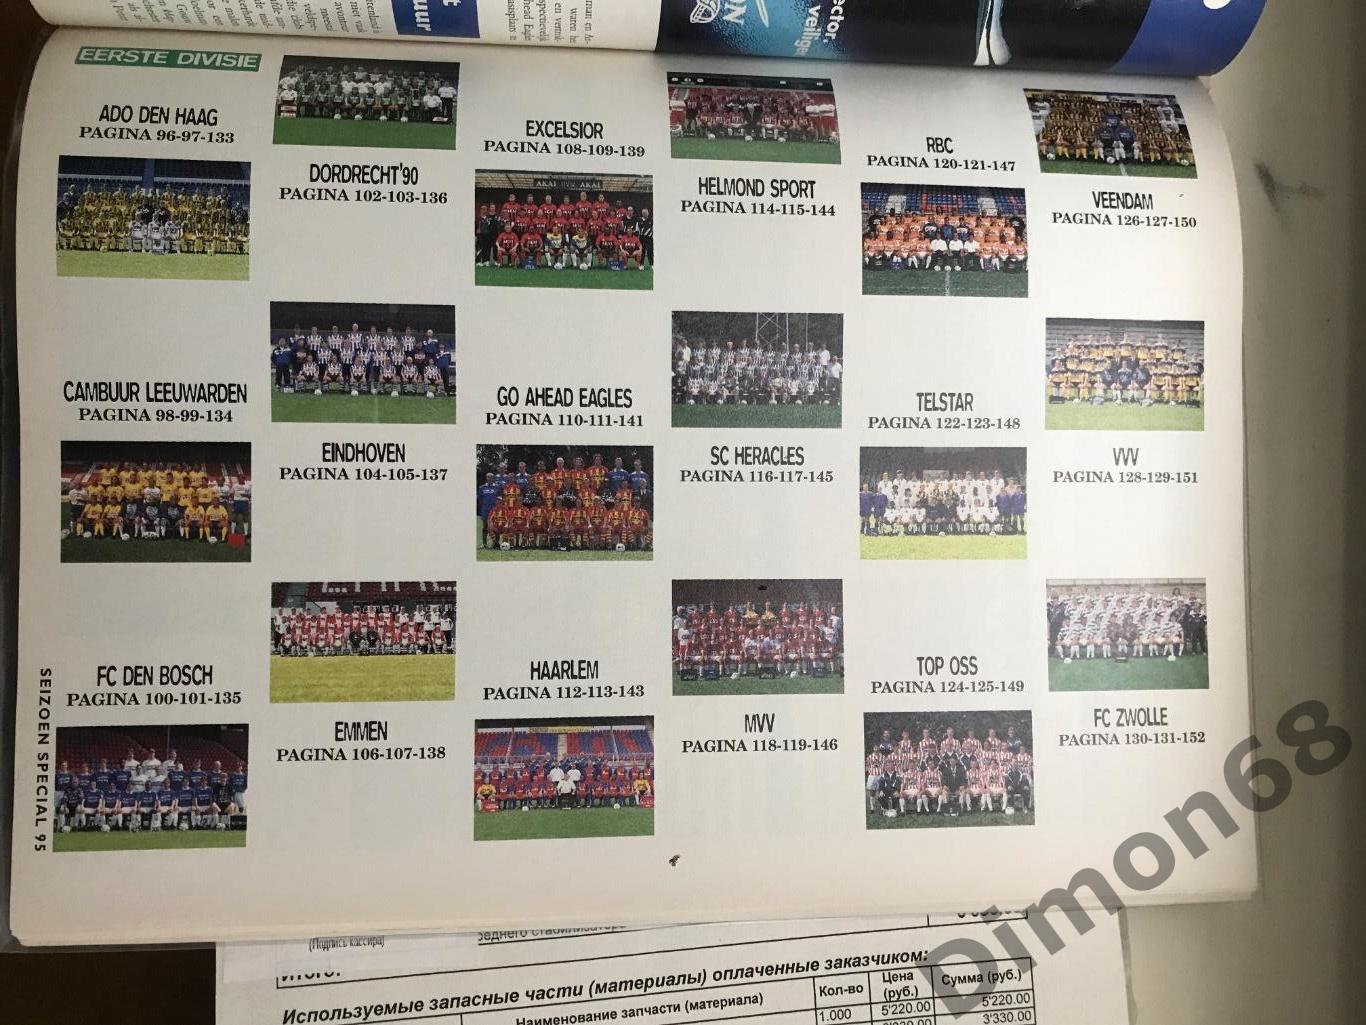 voetbal international special постеры чем голландии 96/97 4